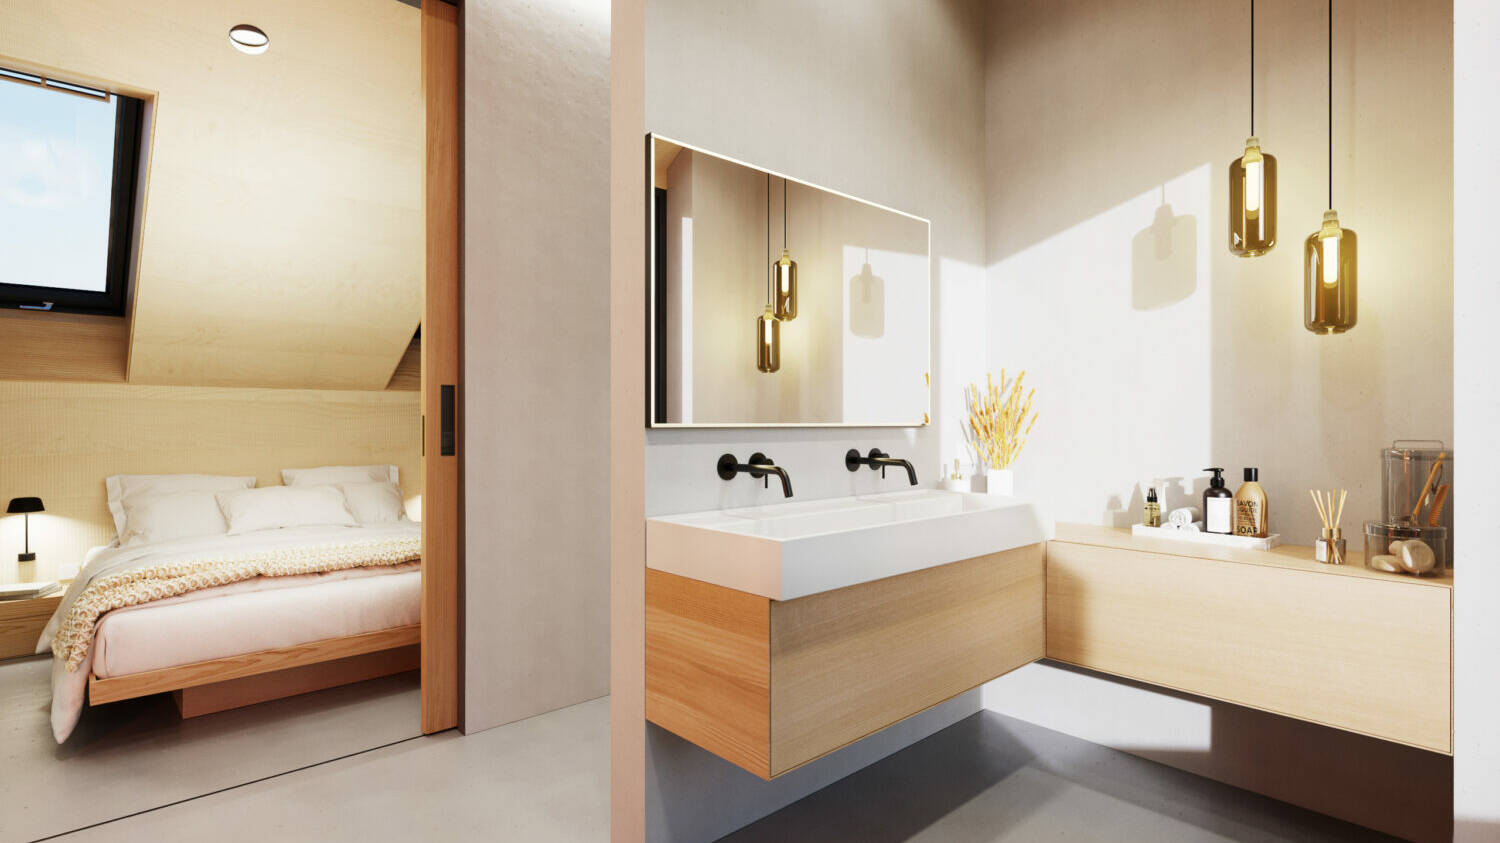 Ein Badezimmer mit Waschtischen, einer begehbaren Dusche.